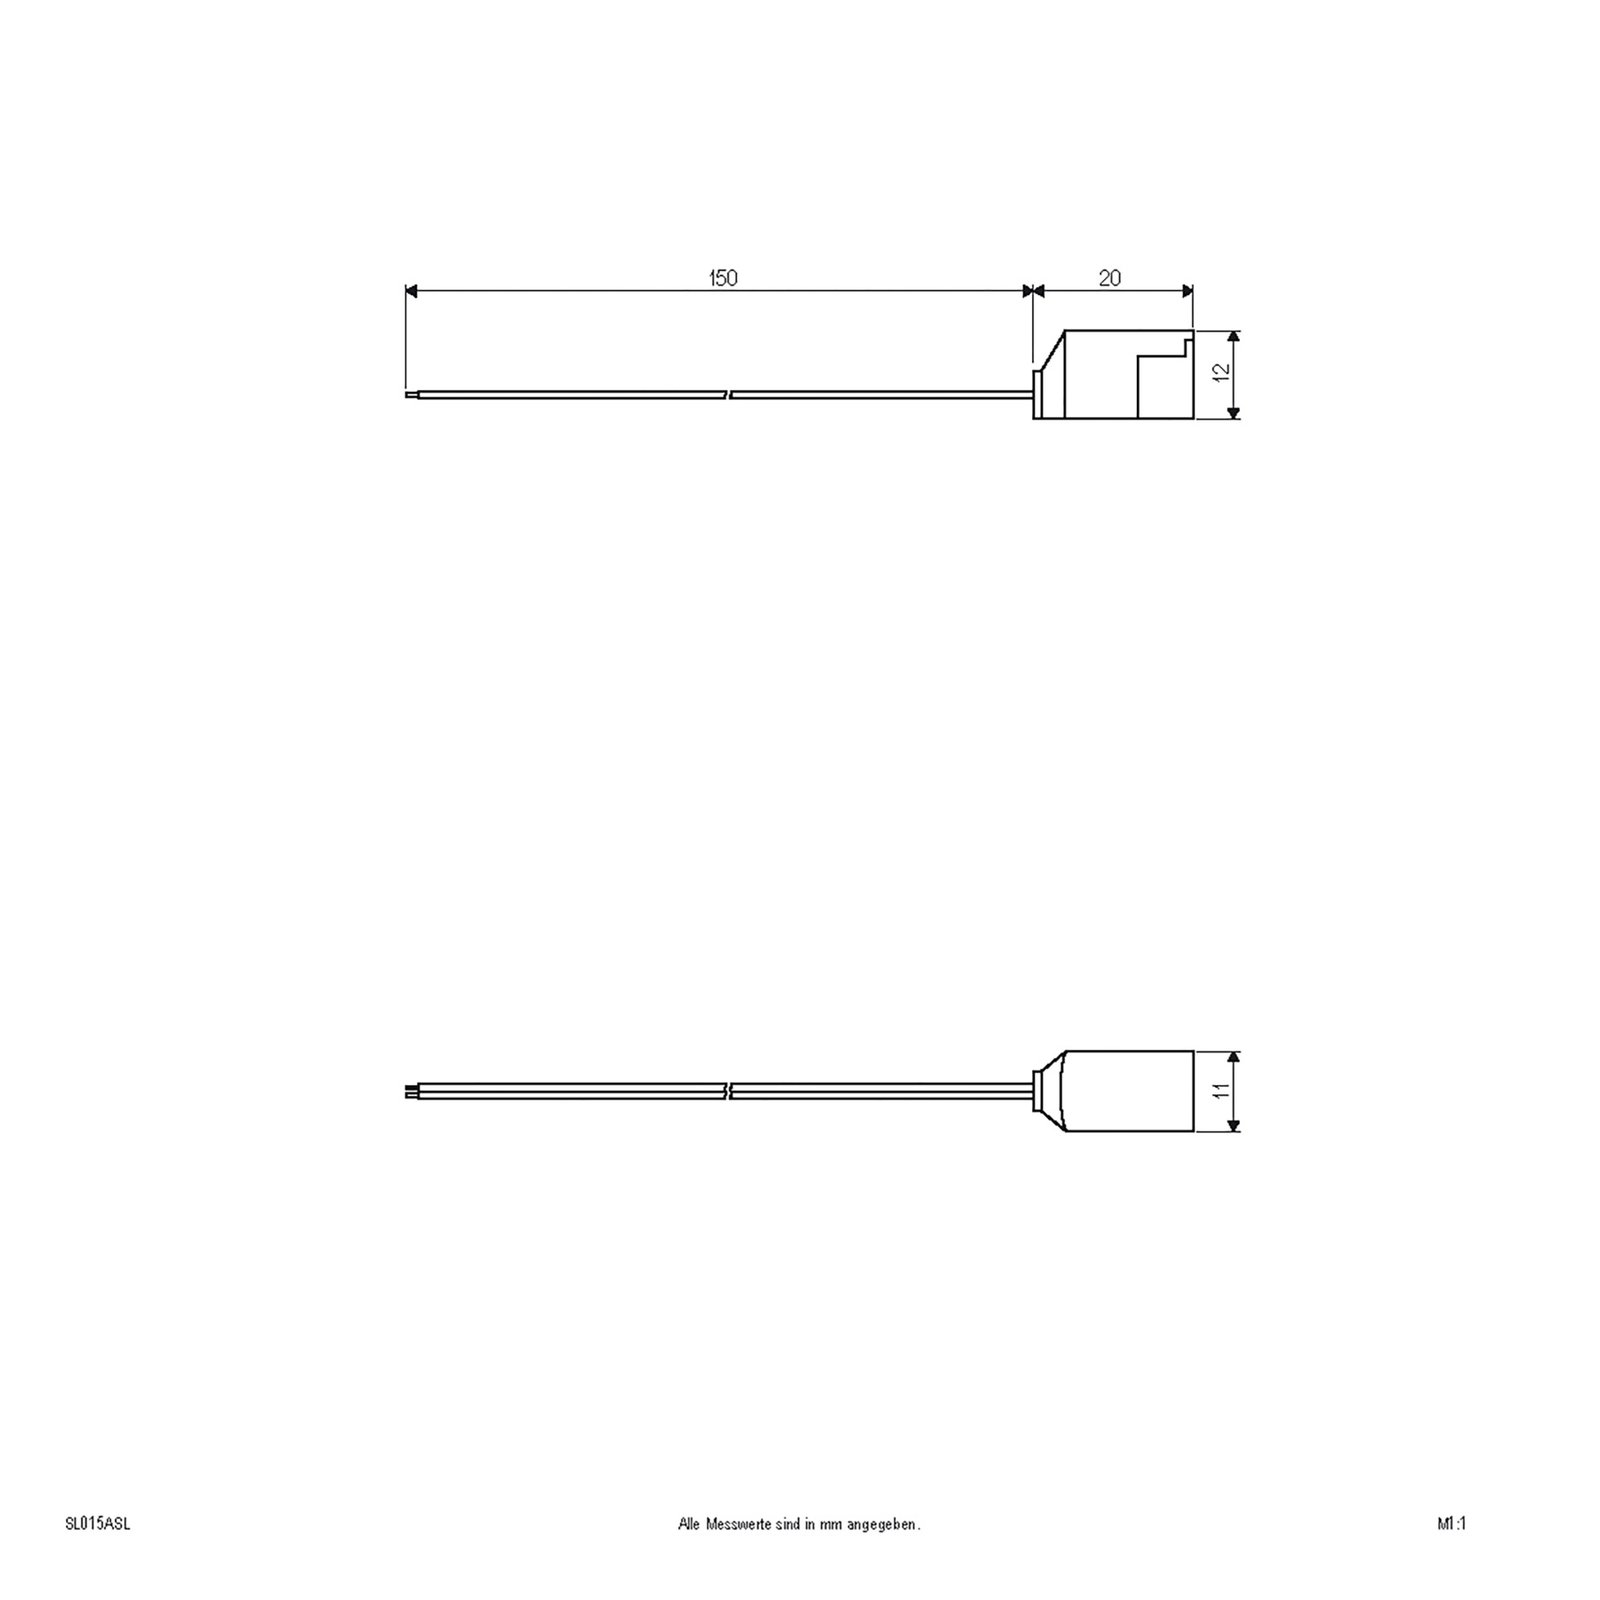 Câble de raccordement pour série Bordo, long 15 cm